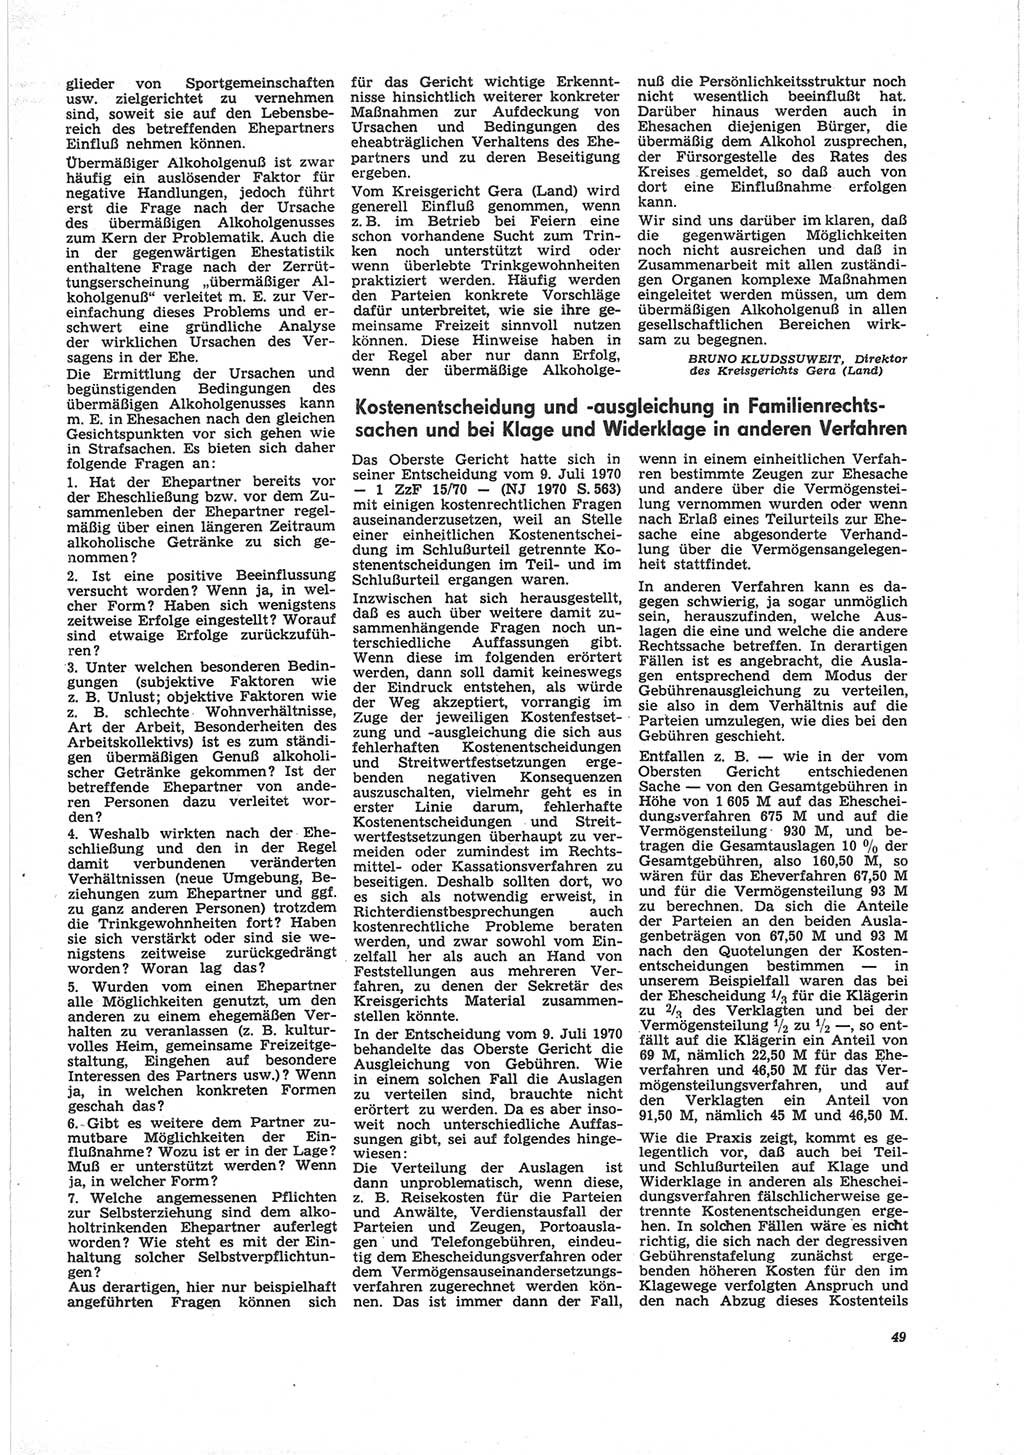 Neue Justiz (NJ), Zeitschrift für Recht und Rechtswissenschaft [Deutsche Demokratische Republik (DDR)], 25. Jahrgang 1971, Seite 49 (NJ DDR 1971, S. 49)